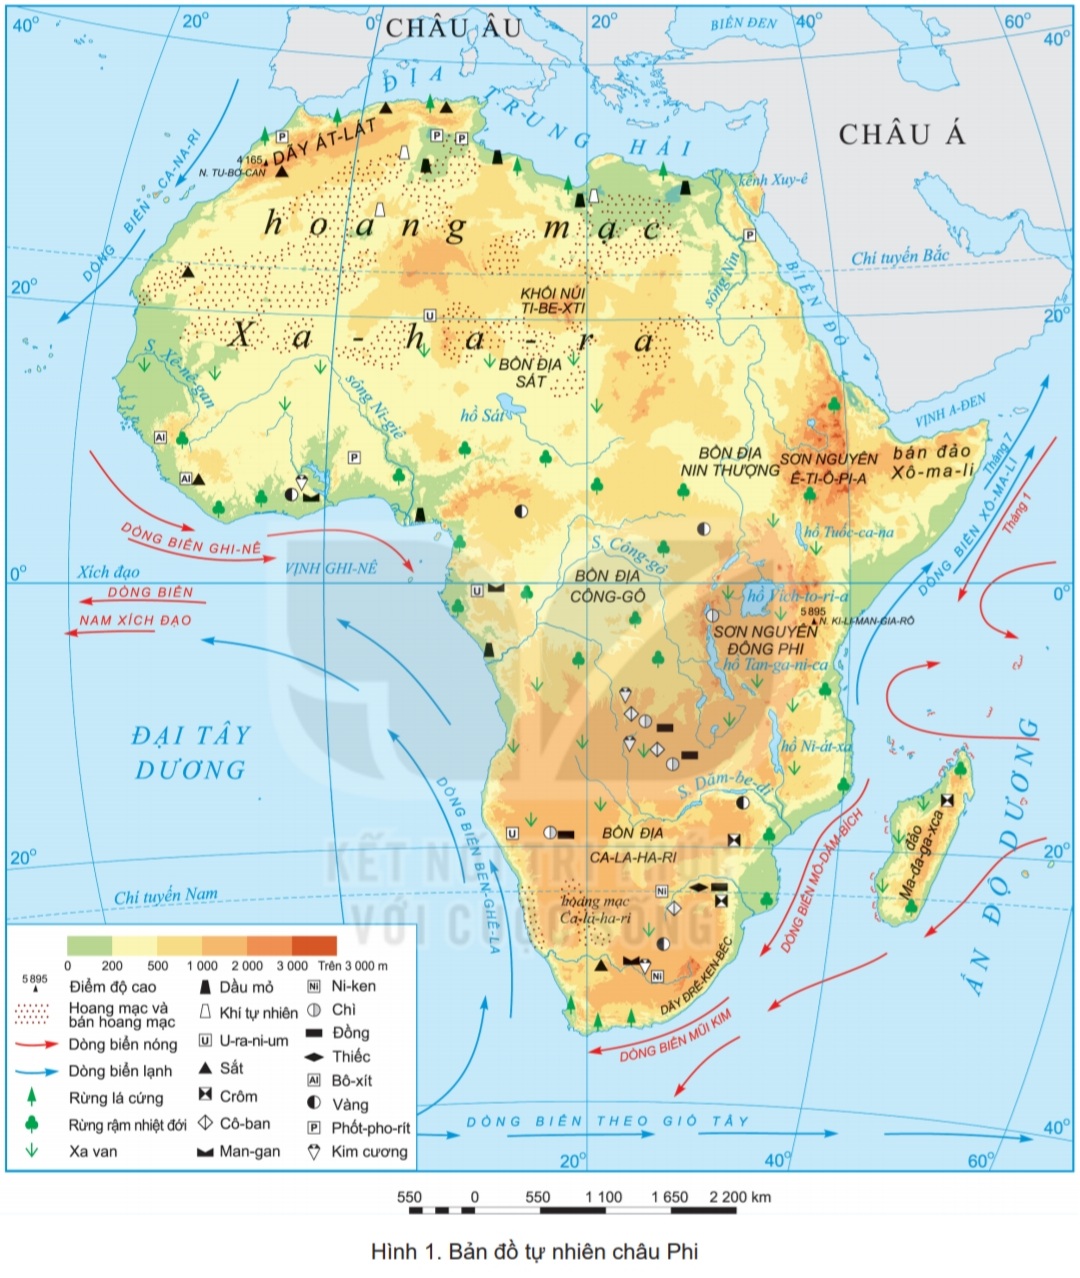 Tìm hiểu bản đồ tự nhiên châu Phi địa danh hấp dẫn và cuộc sống tại đây